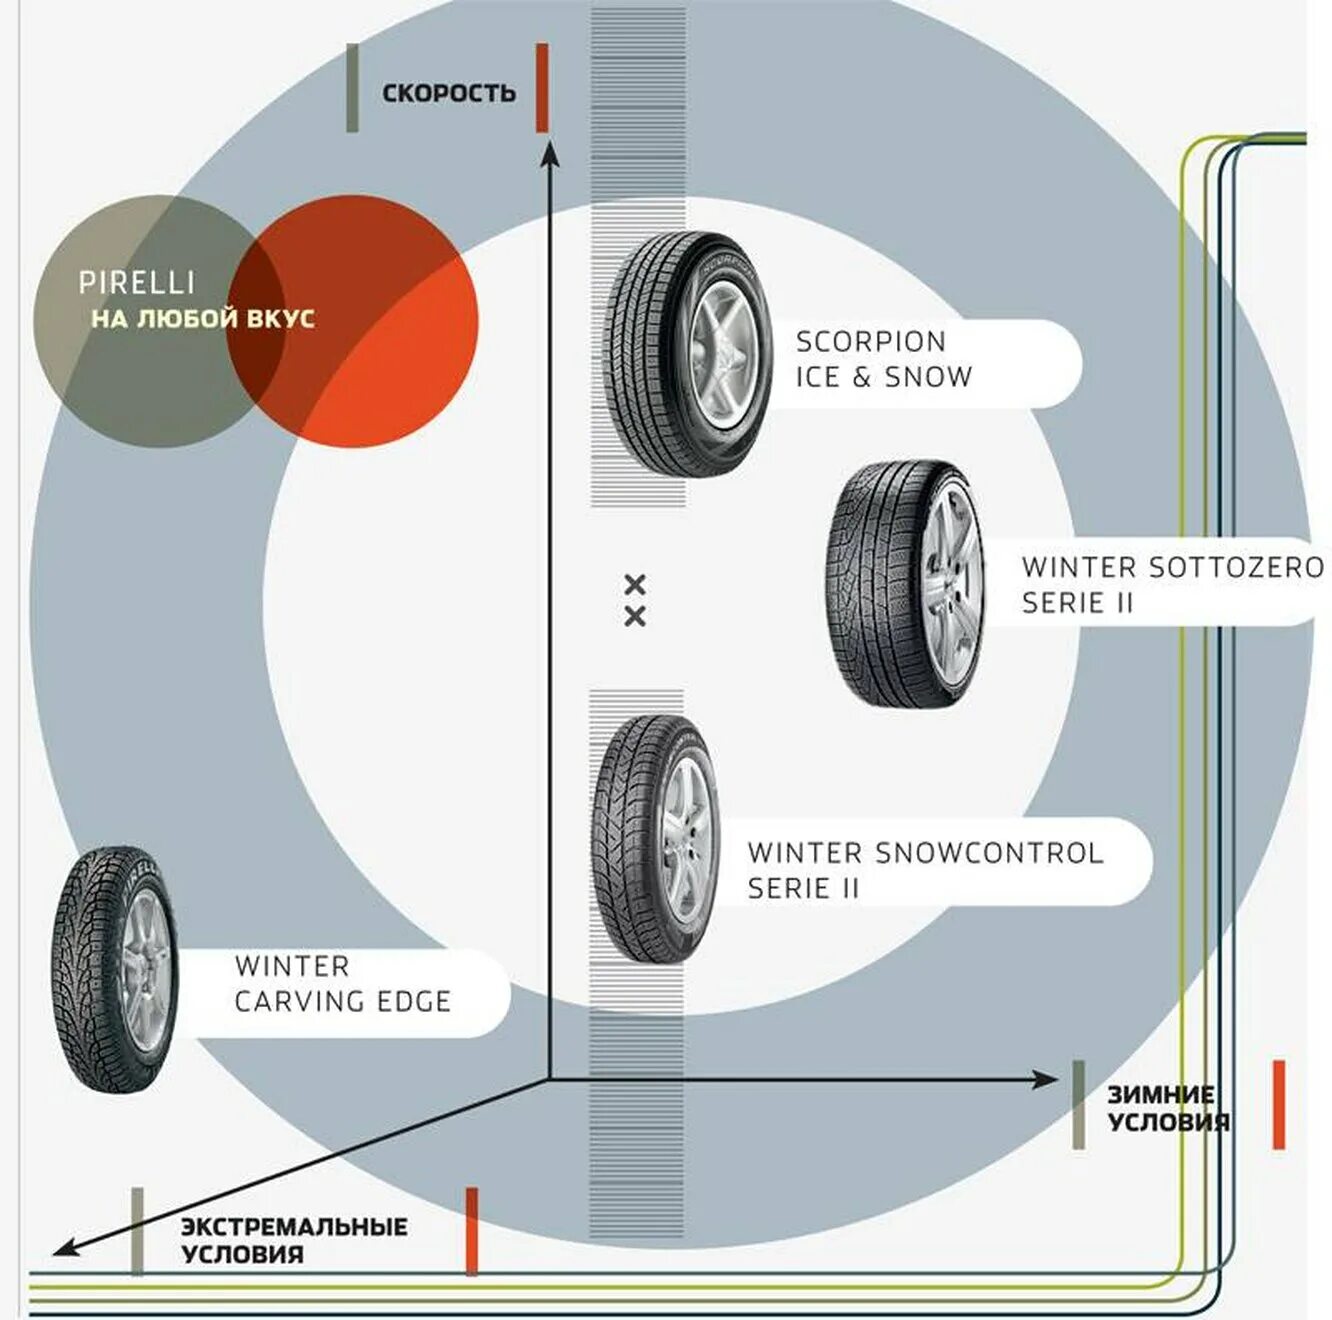 Пирелли резина направление вращения. Шины Pirelli направление вращения. Направление вращения колеса на шине. Направление вращения шины